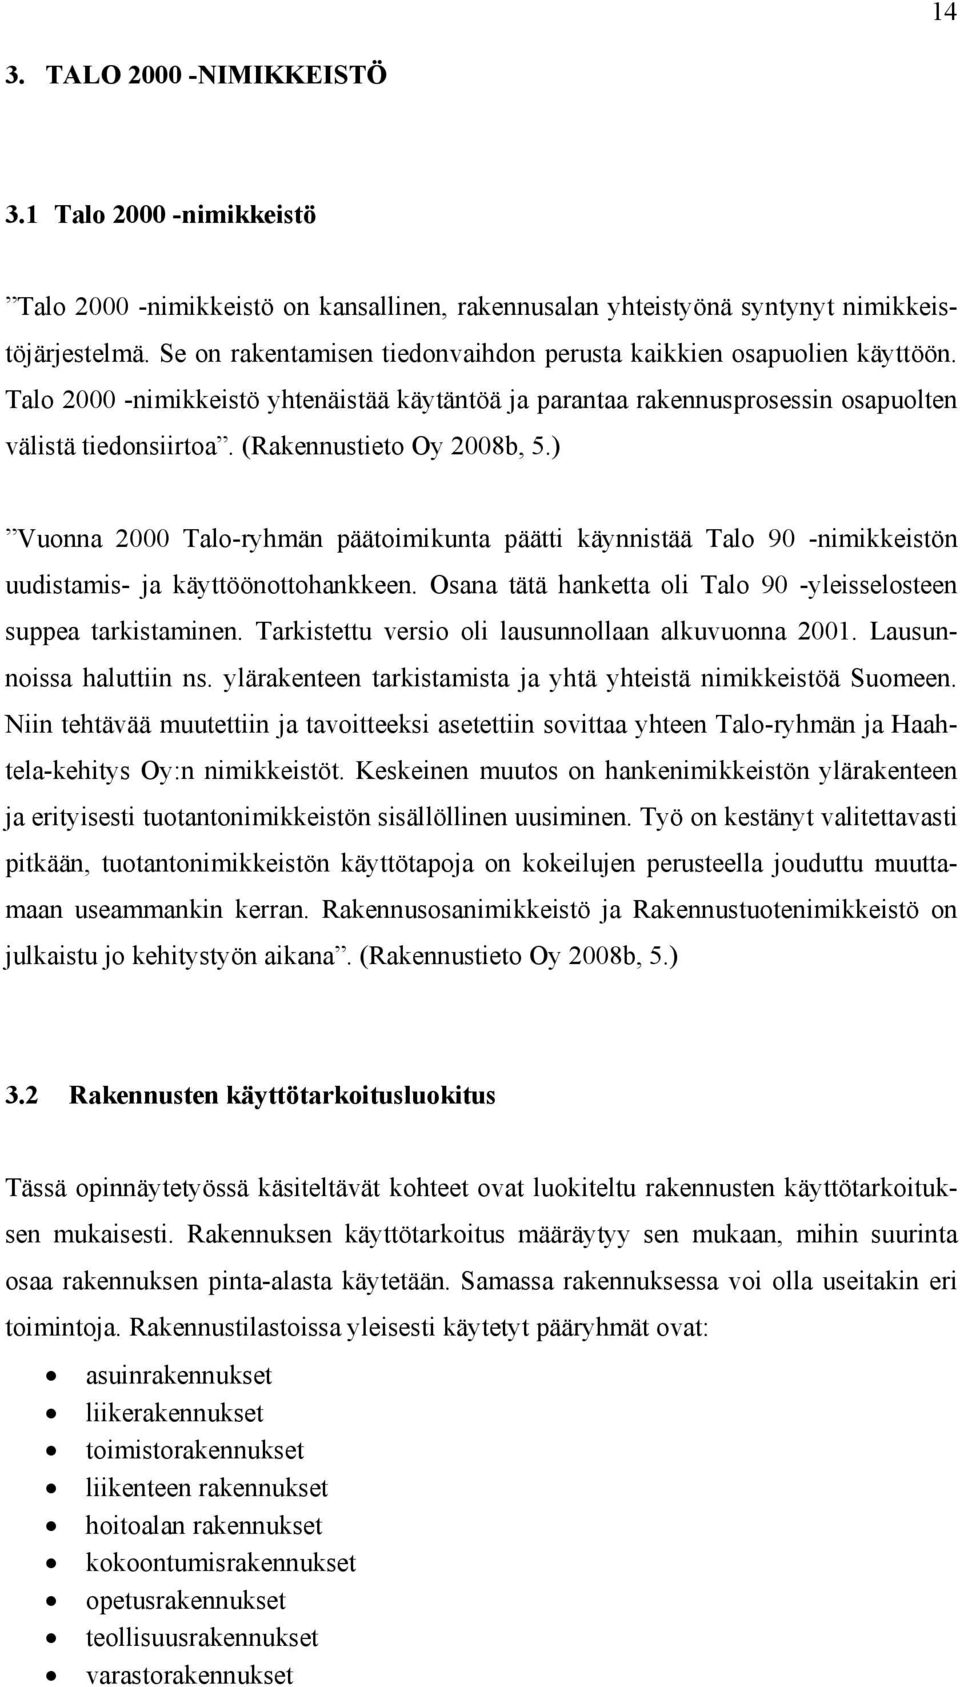 (Rakennustieto Oy 2008b, 5.) Vuonna 2000 Talo-ryhmän päätoimikunta päätti käynnistää Talo 90 -nimikkeistön uudistamis- ja käyttöönottohankkeen.